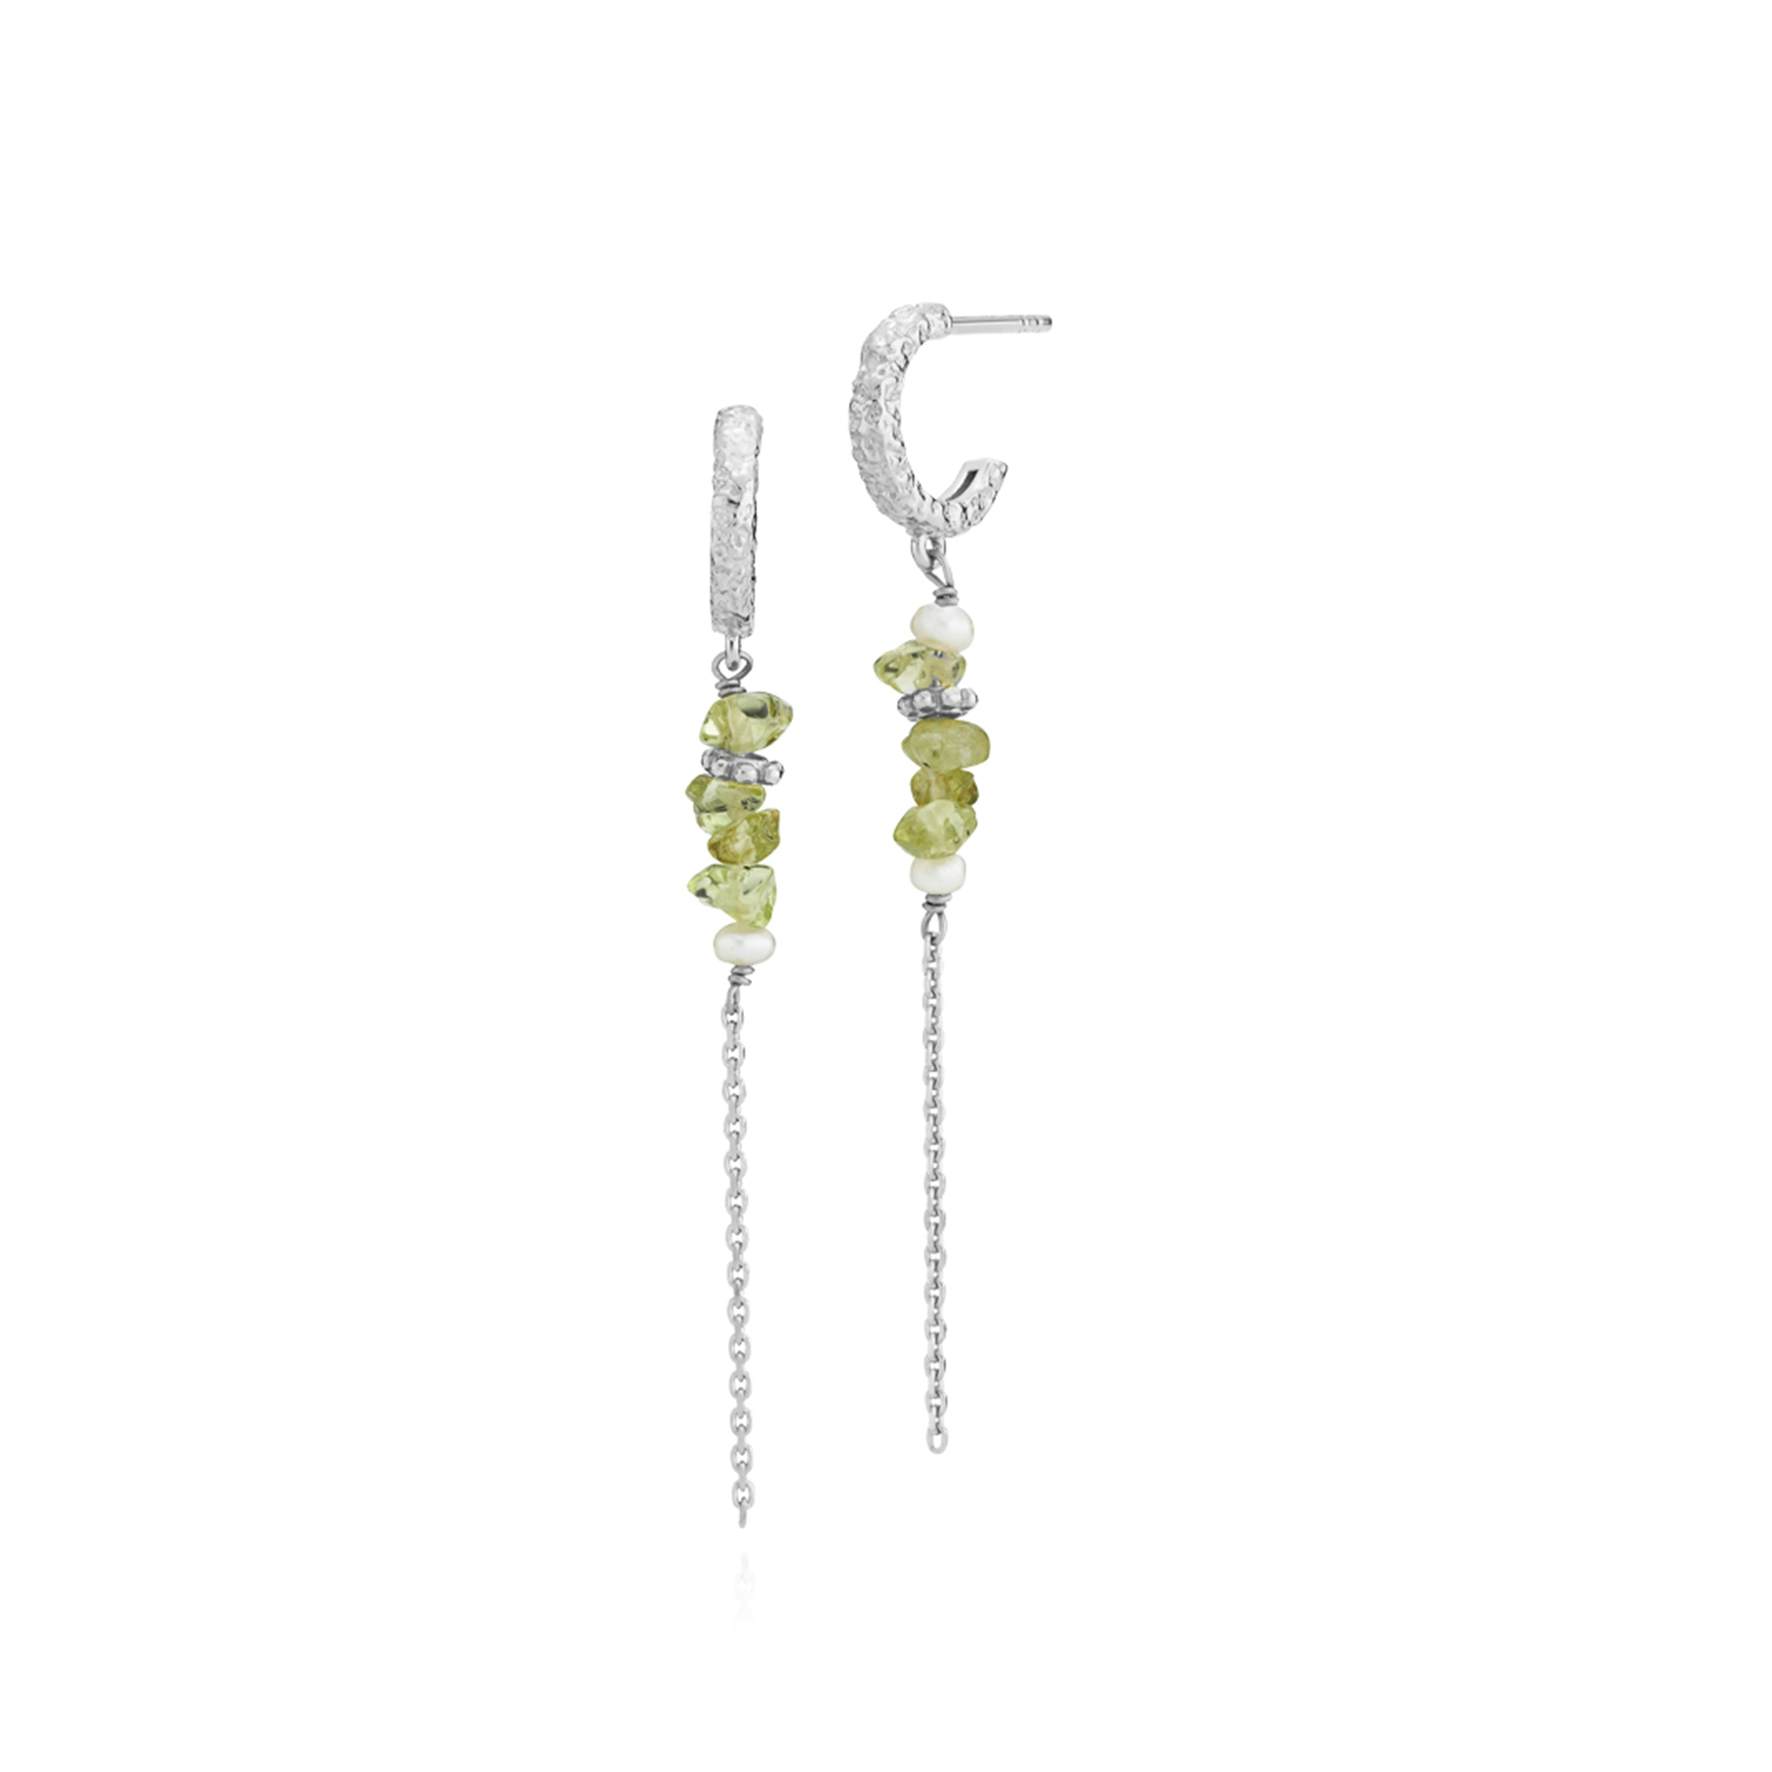 Beach Green Earrings fra Sistie i Sølv Sterling 925